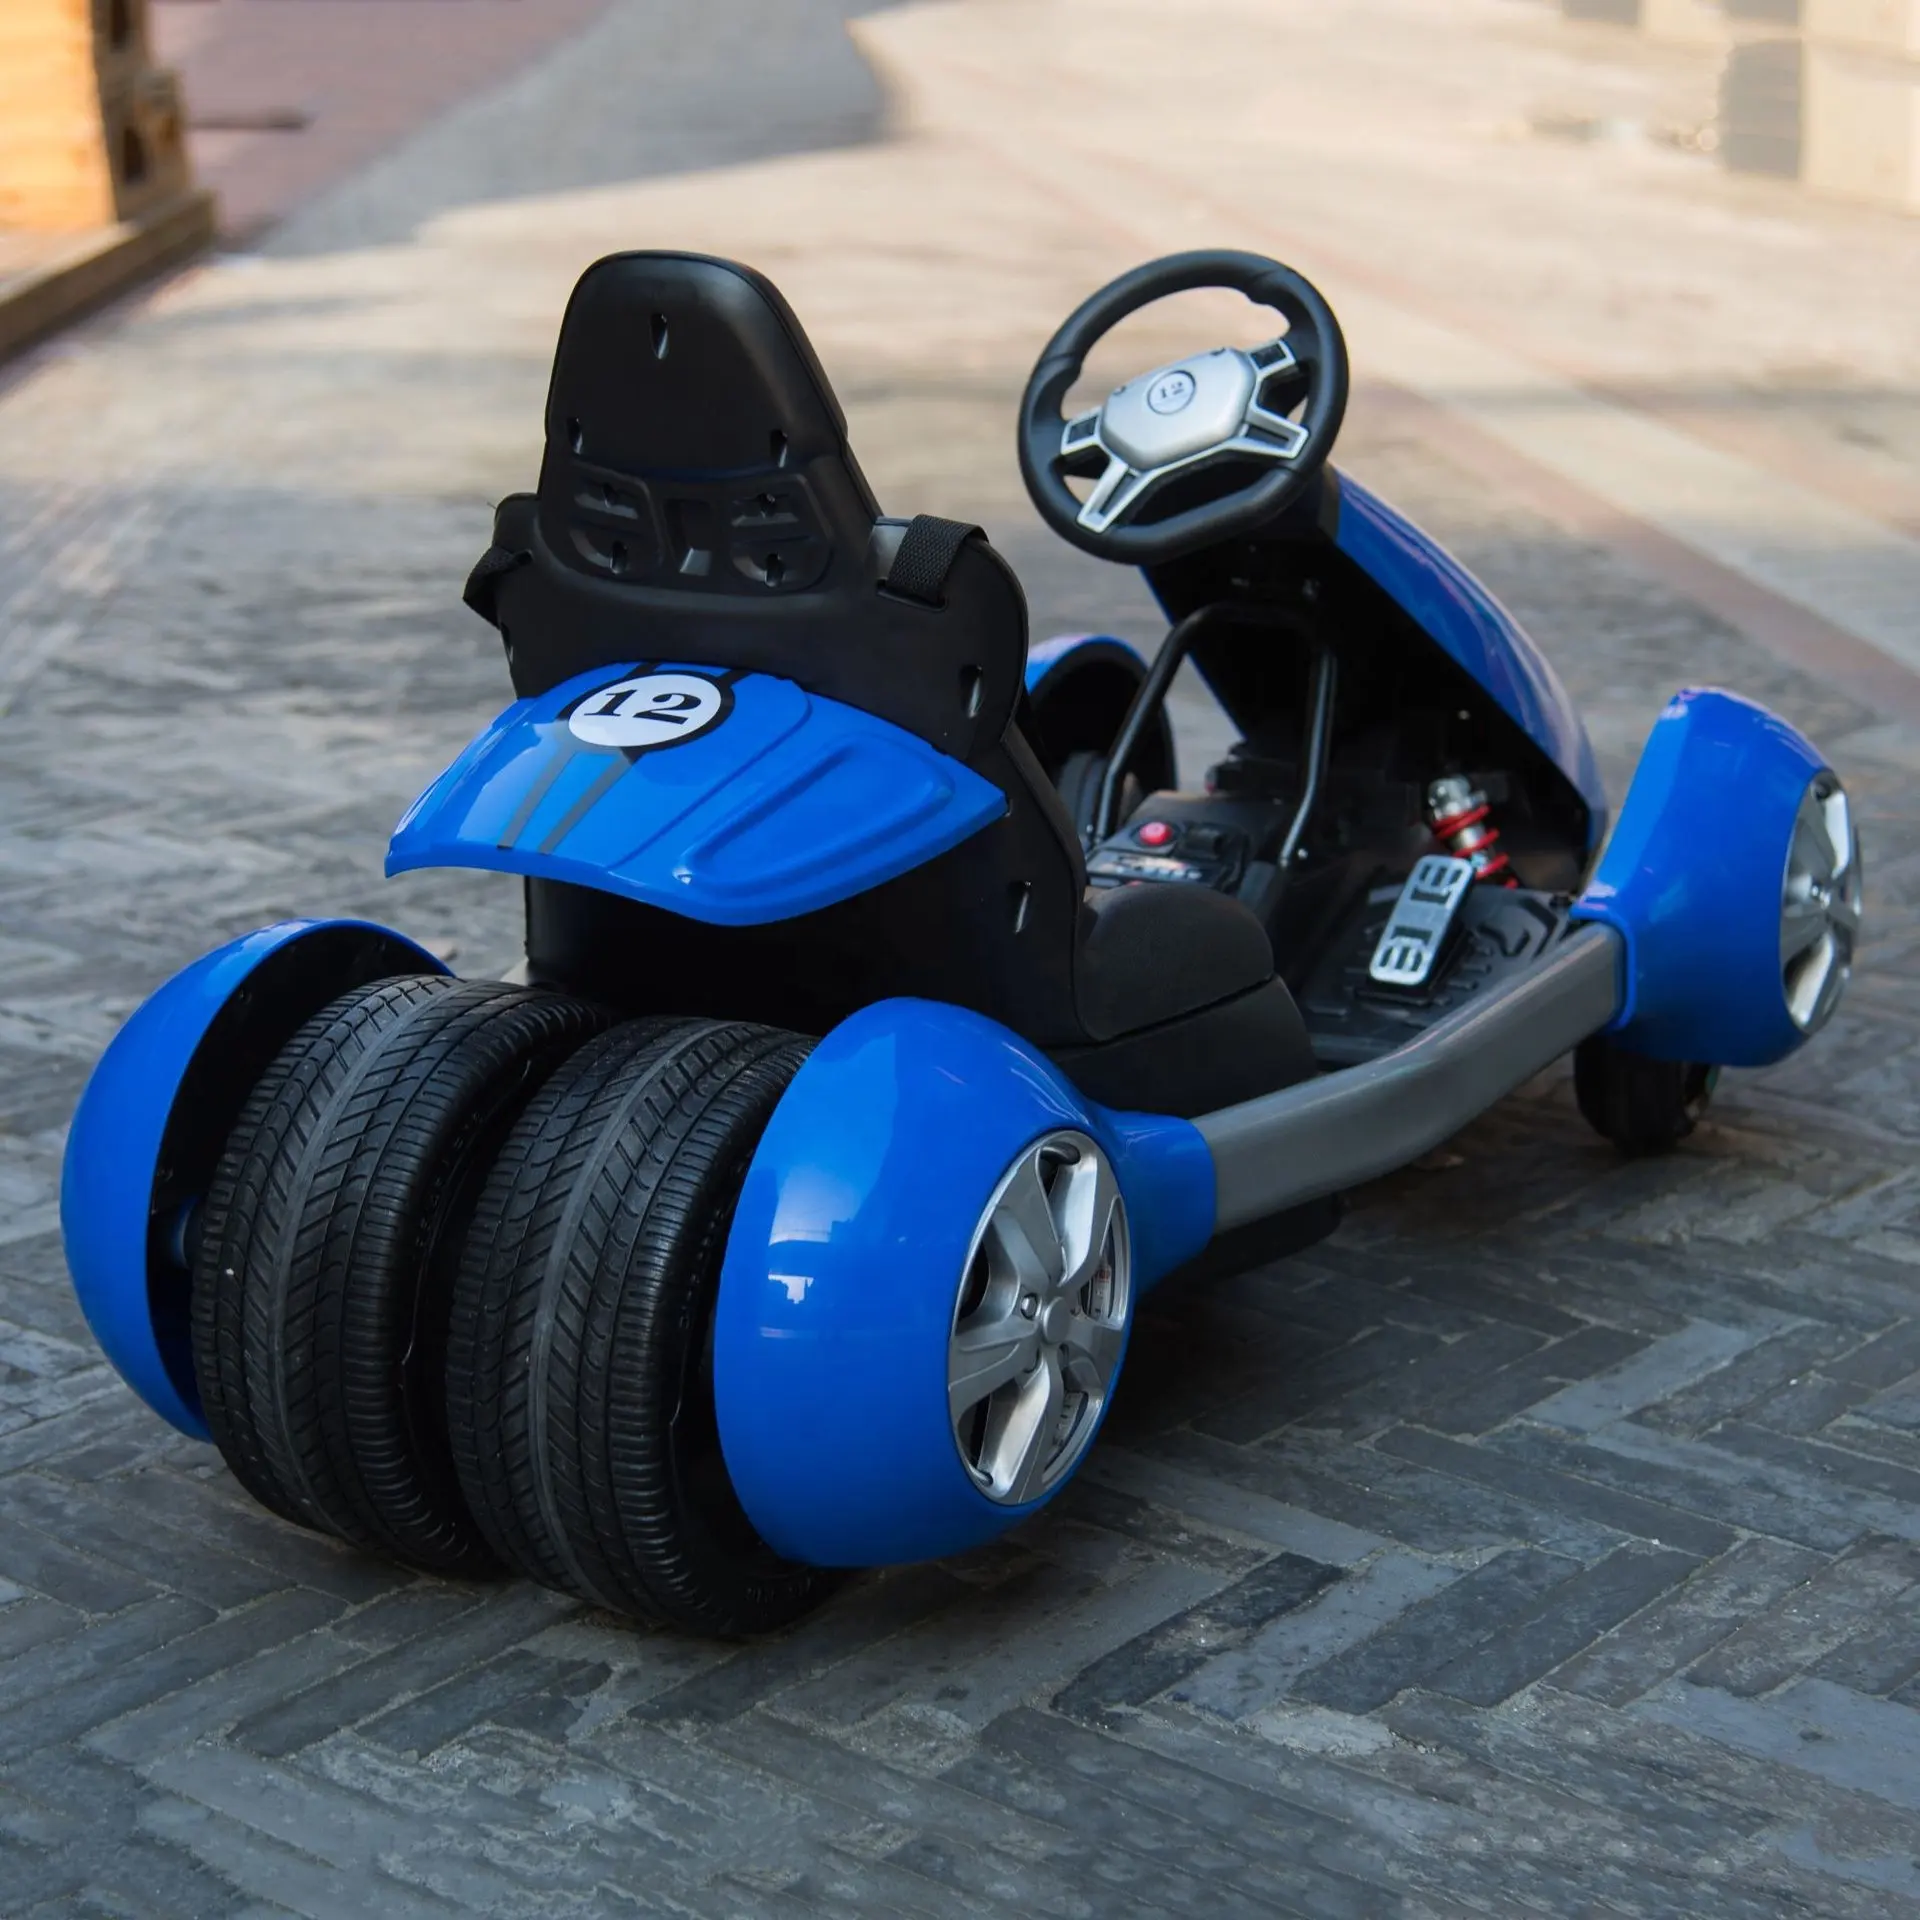 Batterie betriebener Vergnügung spark Fahrten billige Kinder elektrische Pedals itz Offroad Go Karts